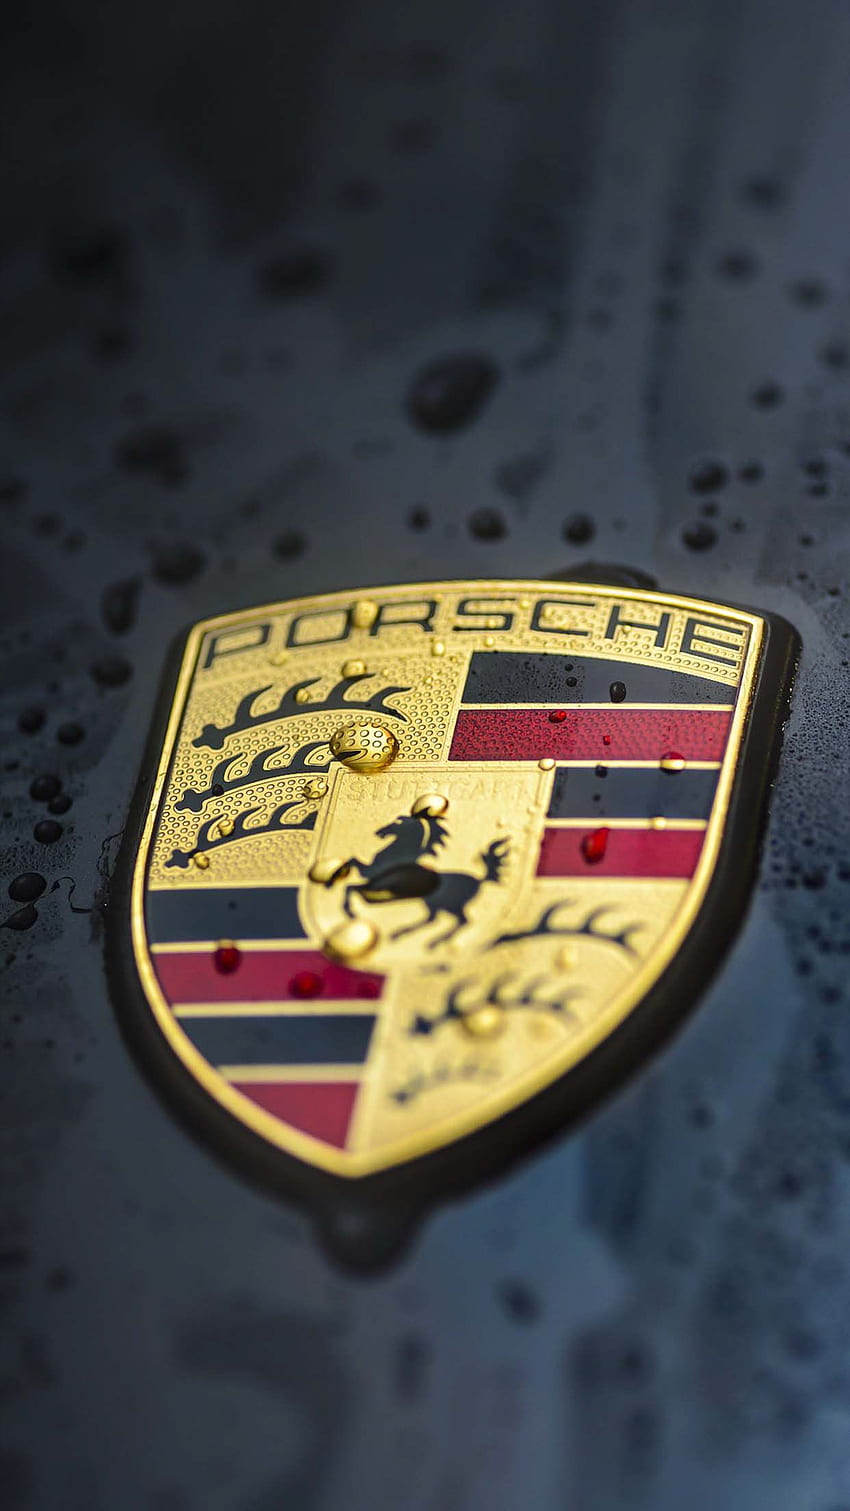 Porsche HD wallpapers | Pxfuel